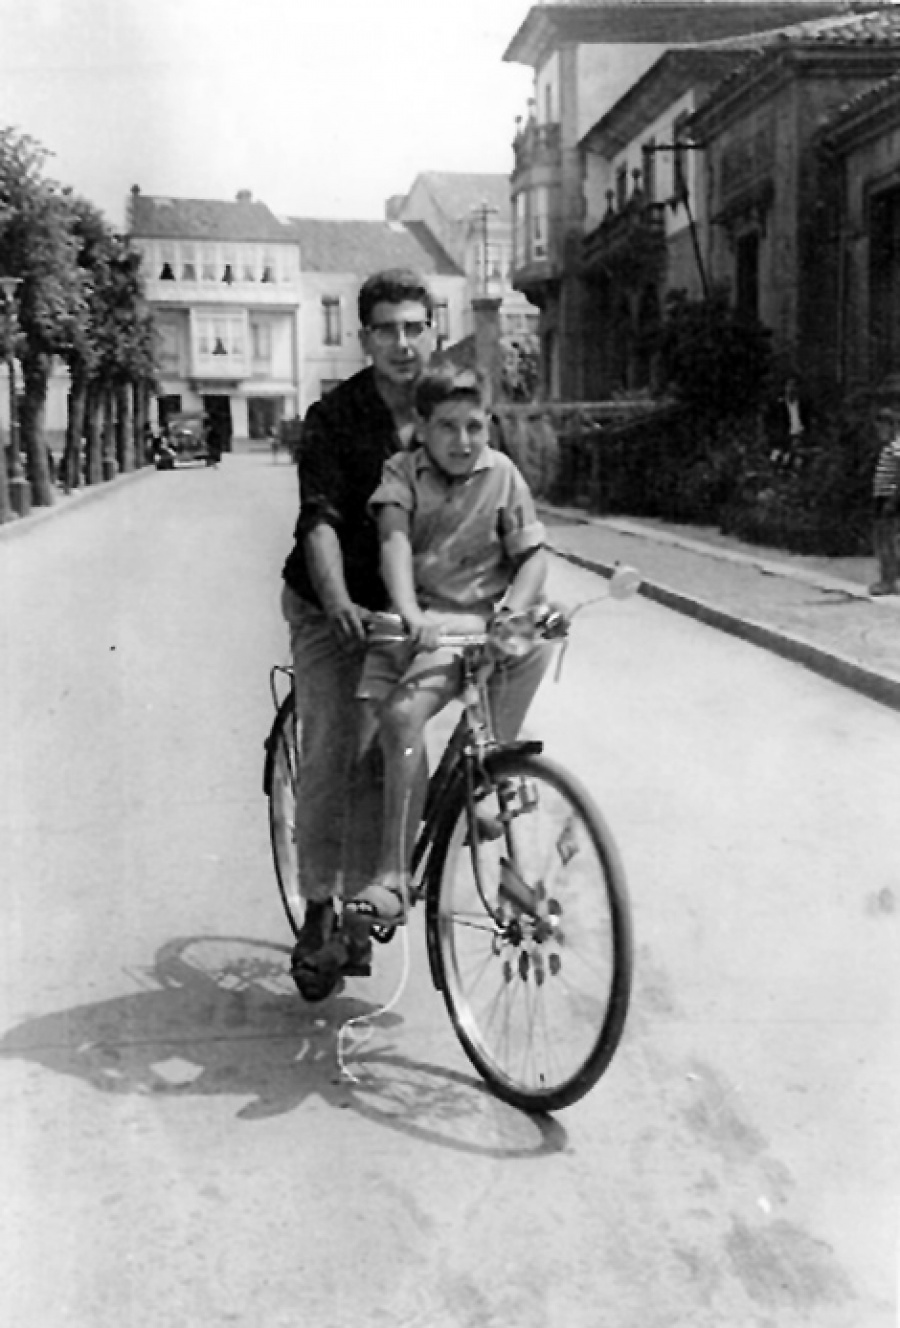 1963 - En bici por Desiderio Varela